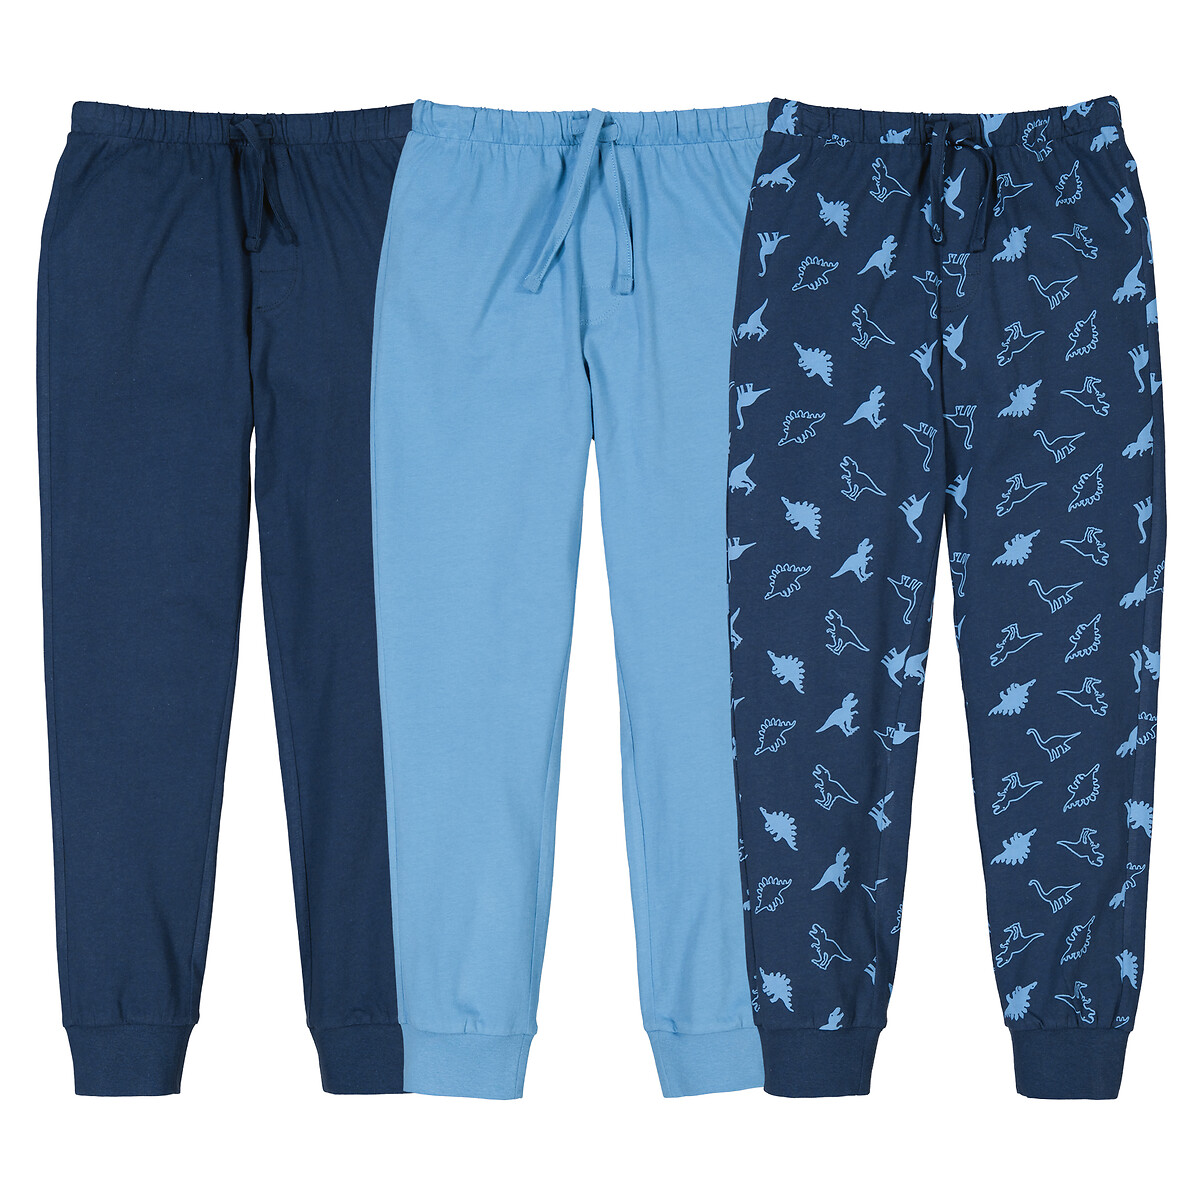 Комплект из трех пижамных брюк La Redoute 3 года - 94 см синий комплект трех пижам из велюра la redoute 3 года 94 см бежевый